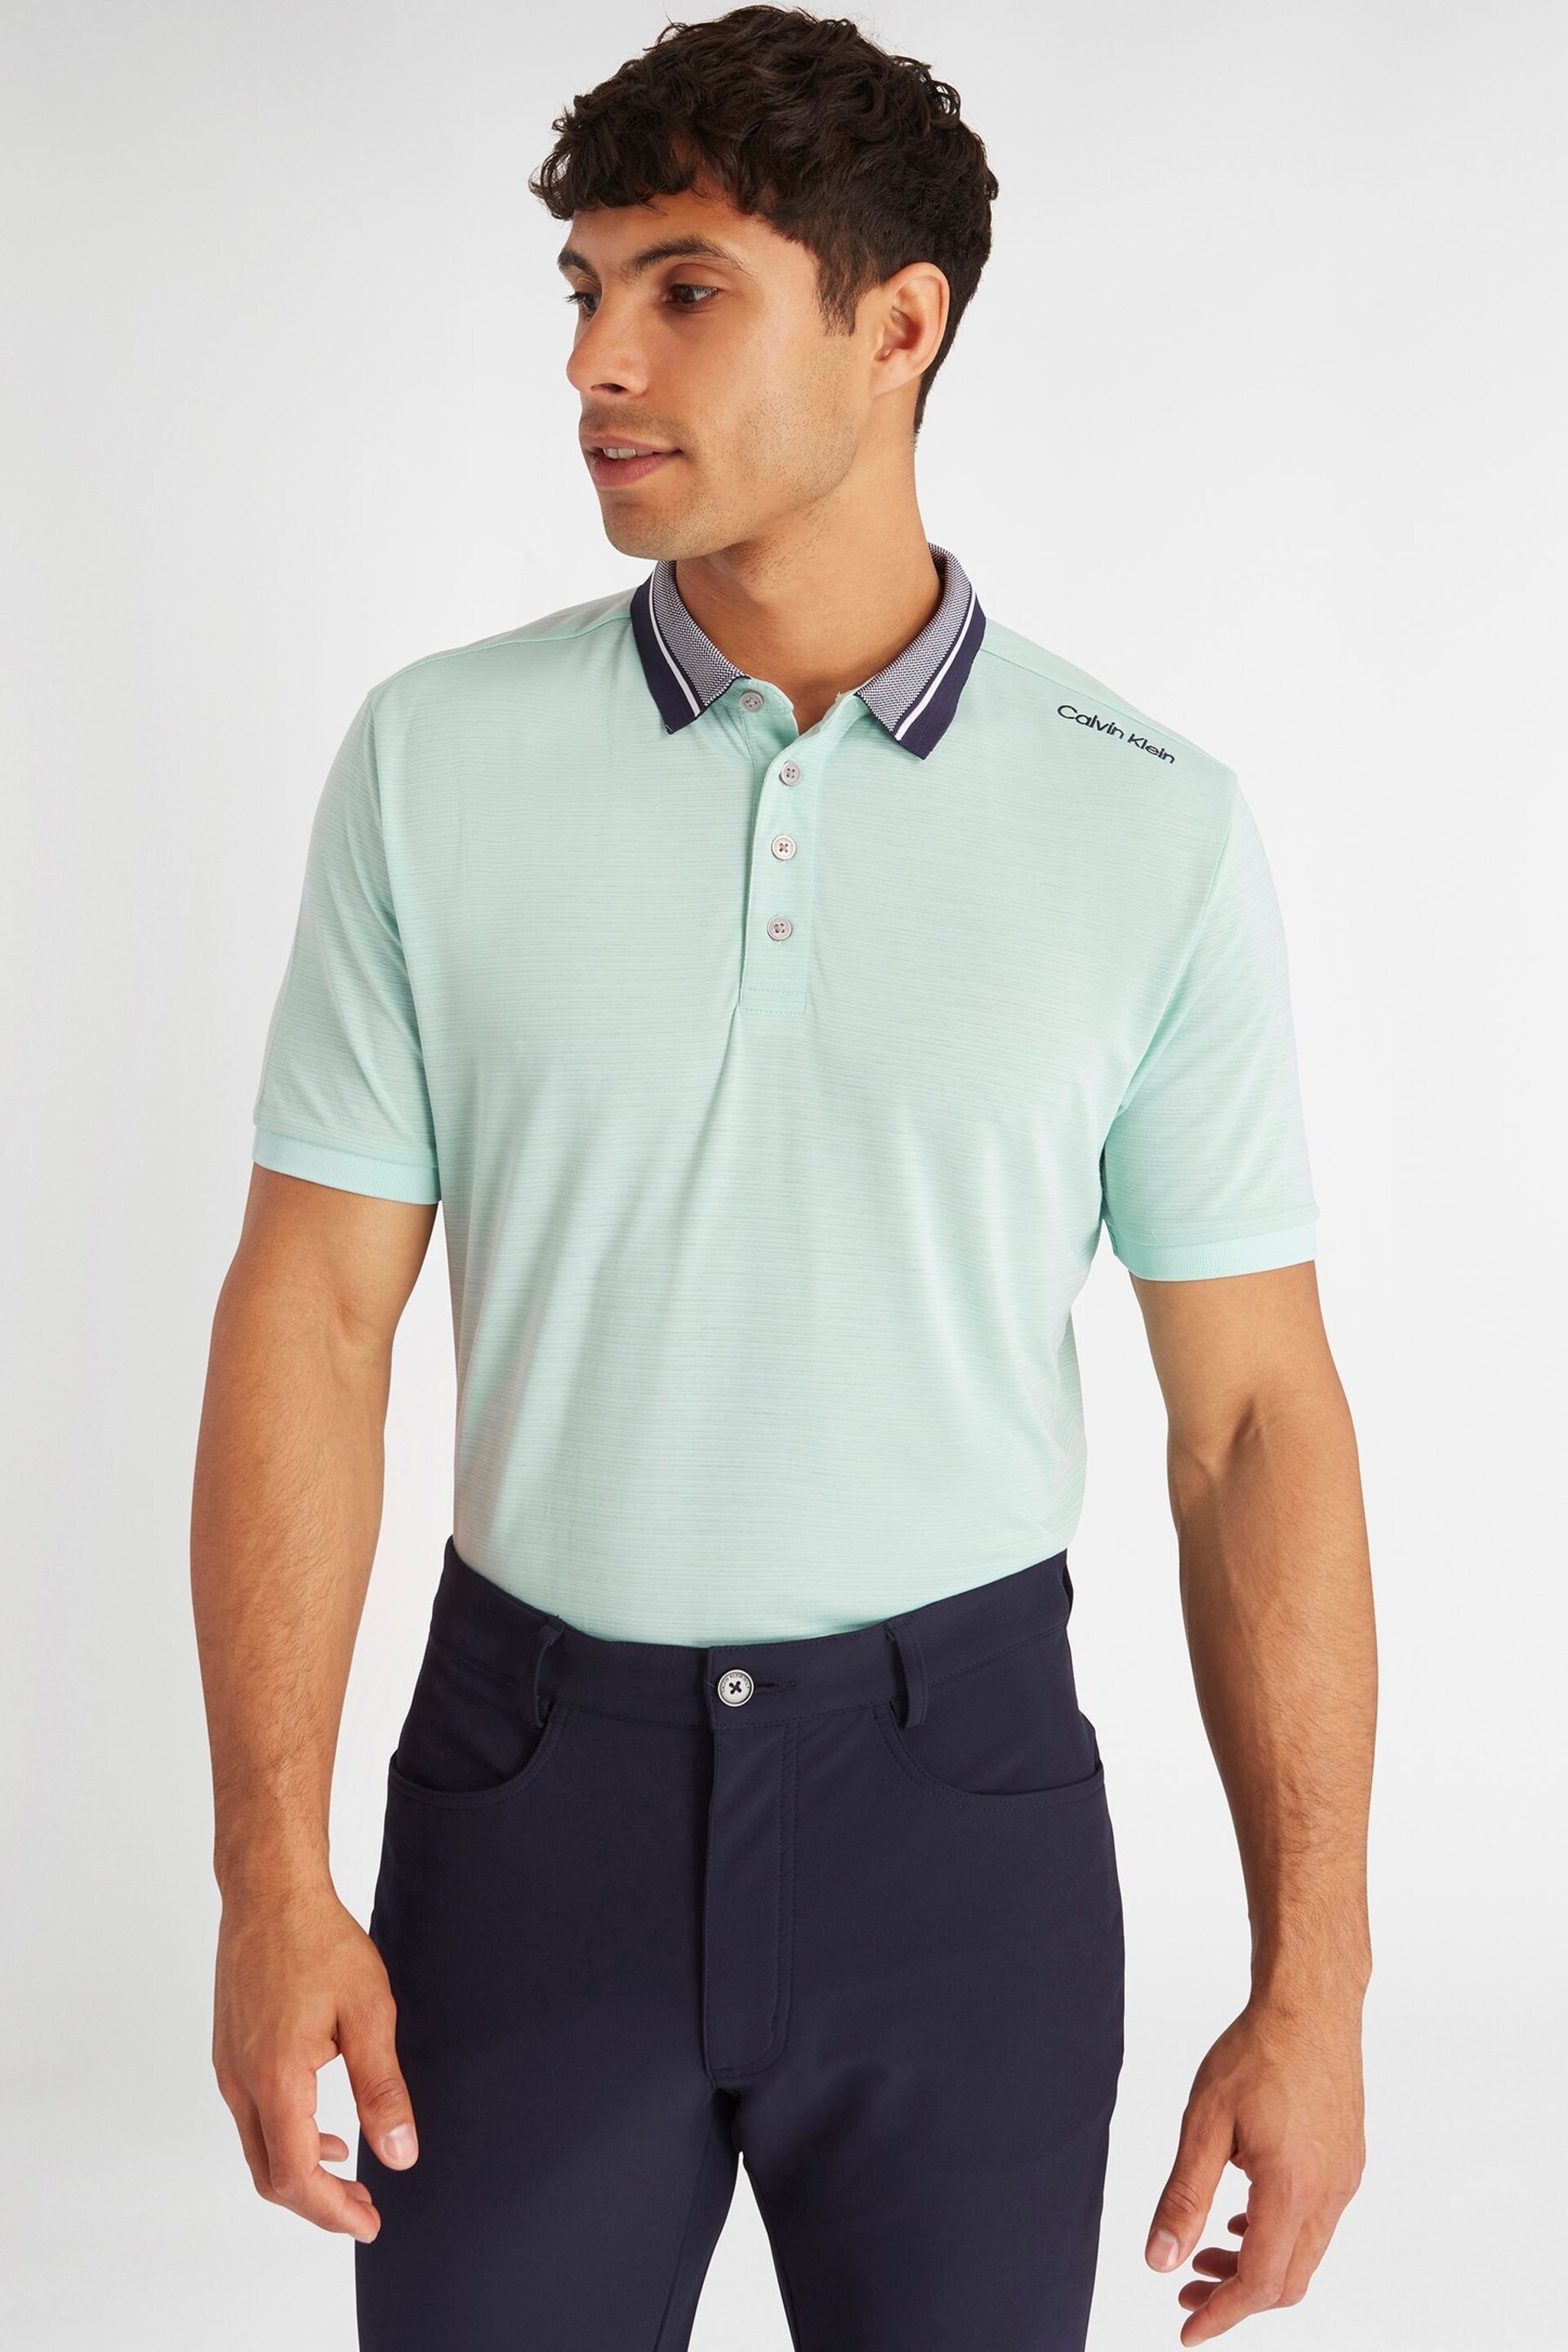 Calvin Klein Golf Navy Parramore Polo Shirt - Image 5 of 12